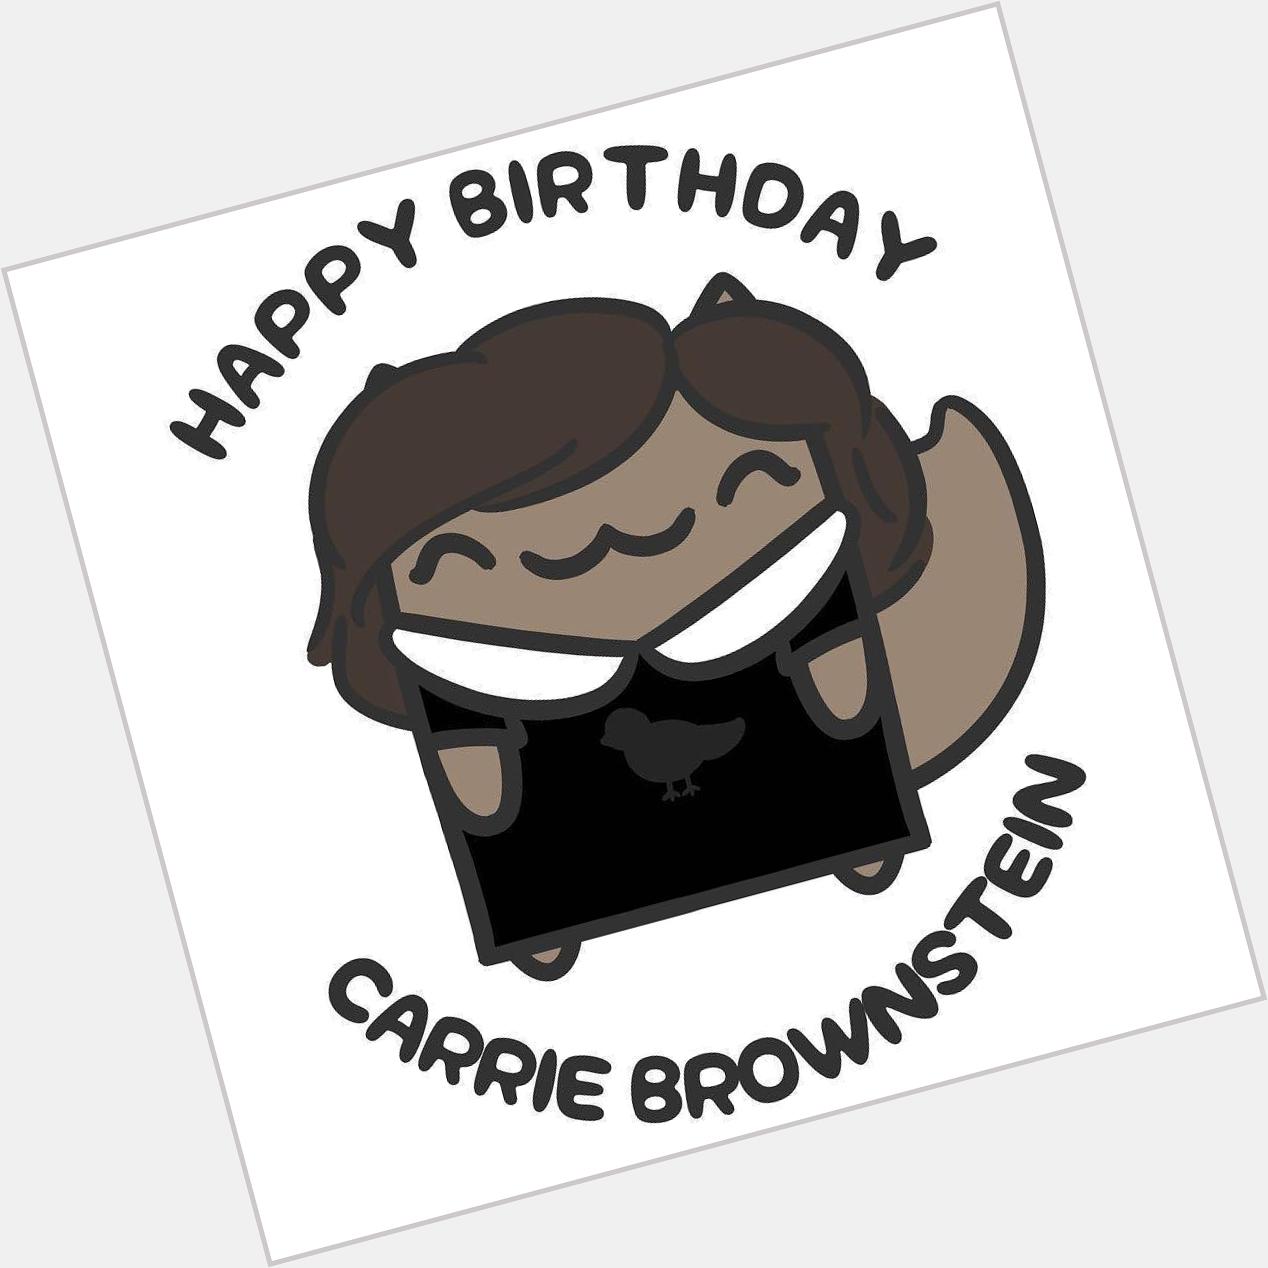 Happy Birthday, Carrie Brownstein! 